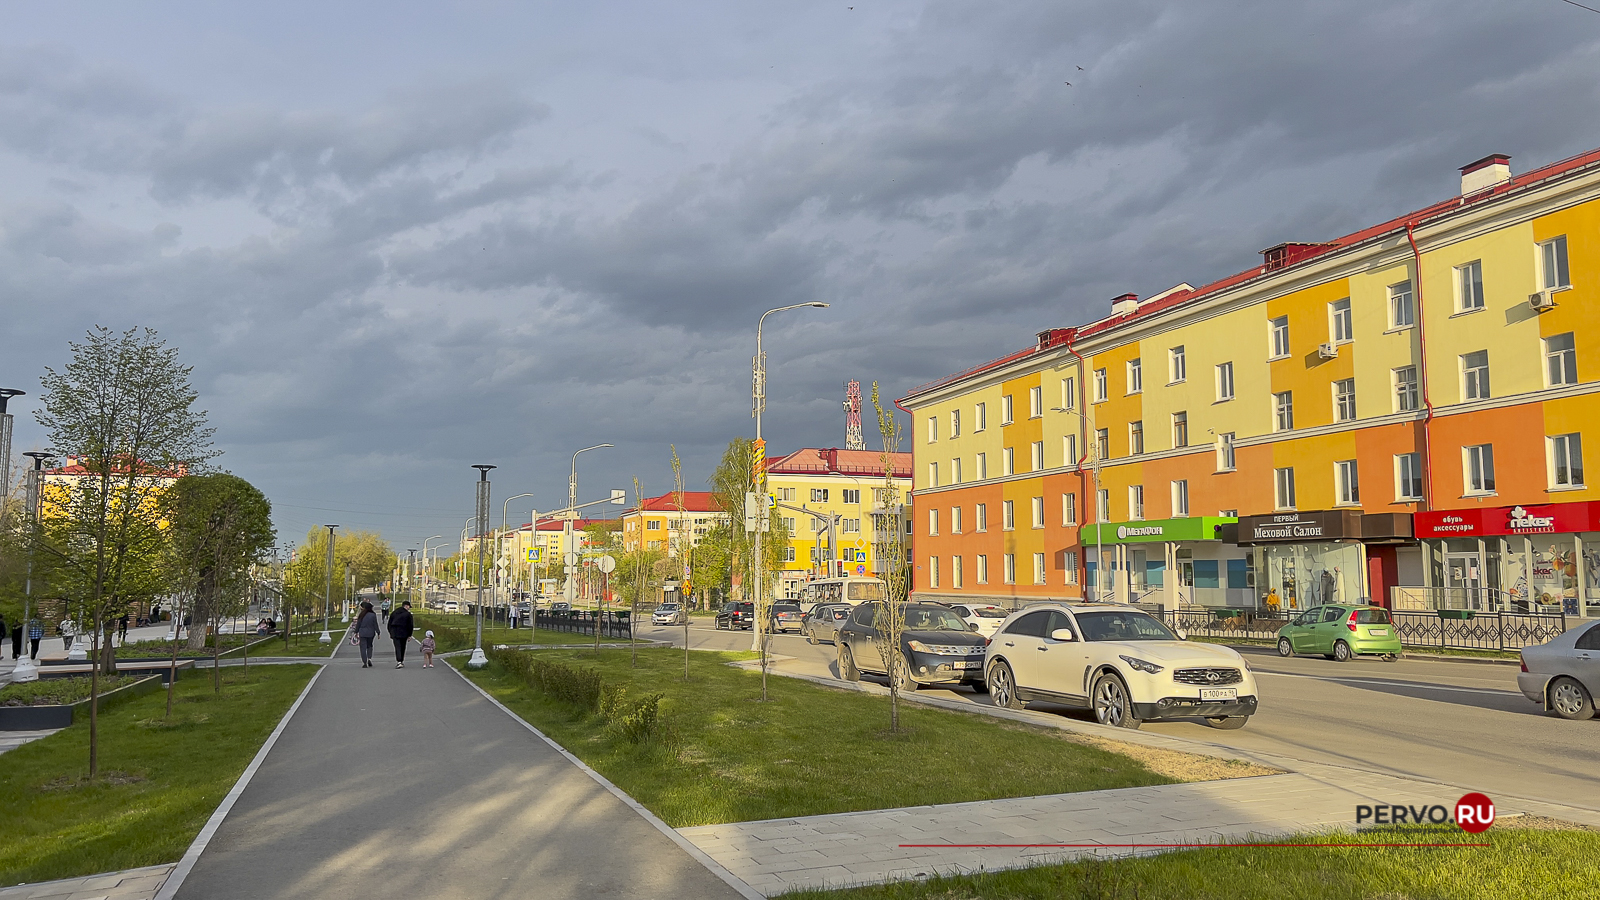 К концу рабочей недели в Первоуральск вернется лето